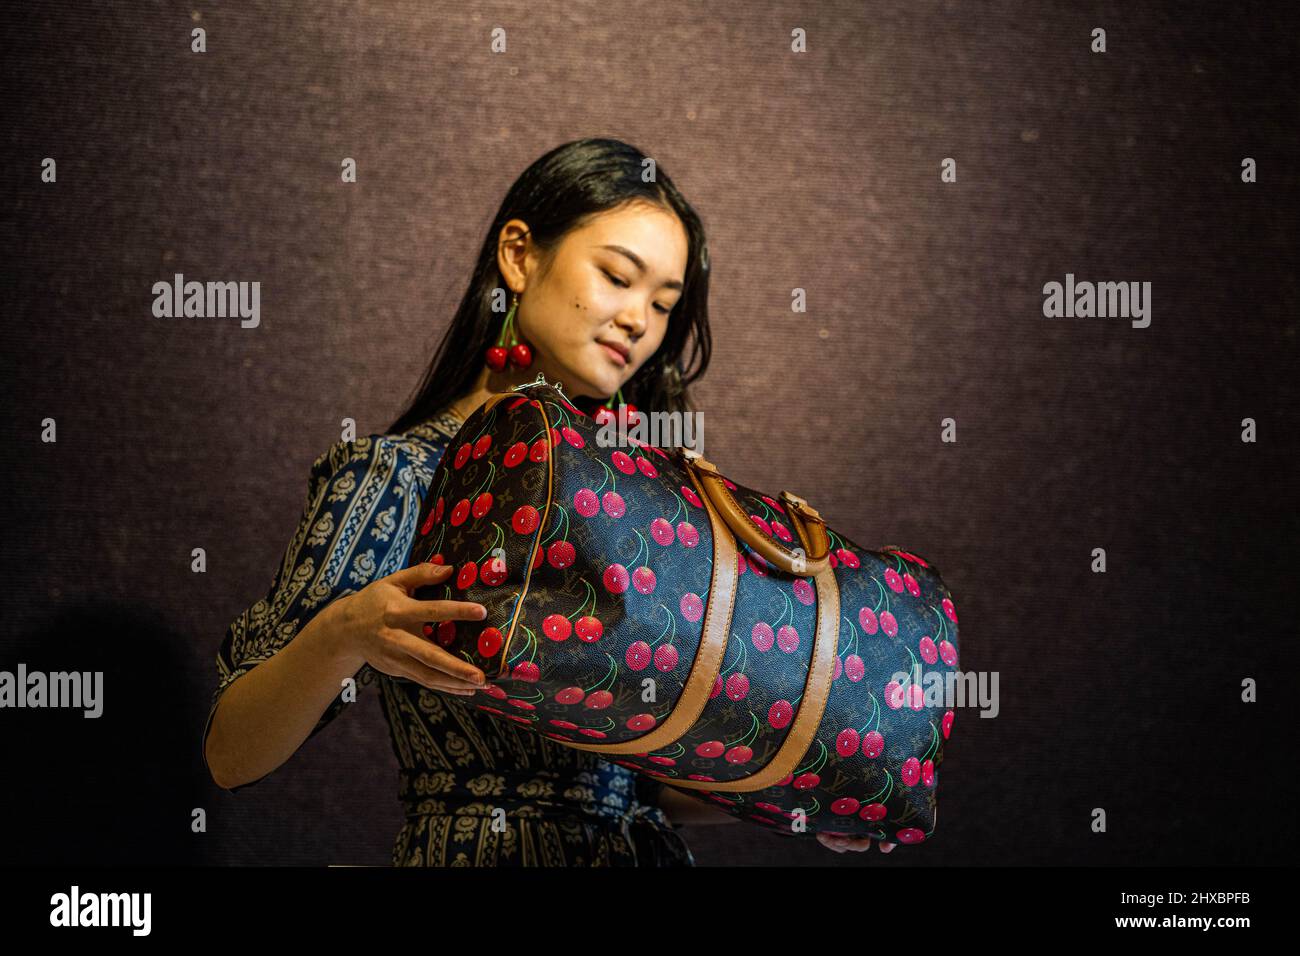 Murakami louis vuitton handbag hi-res stock photography and images - Alamy